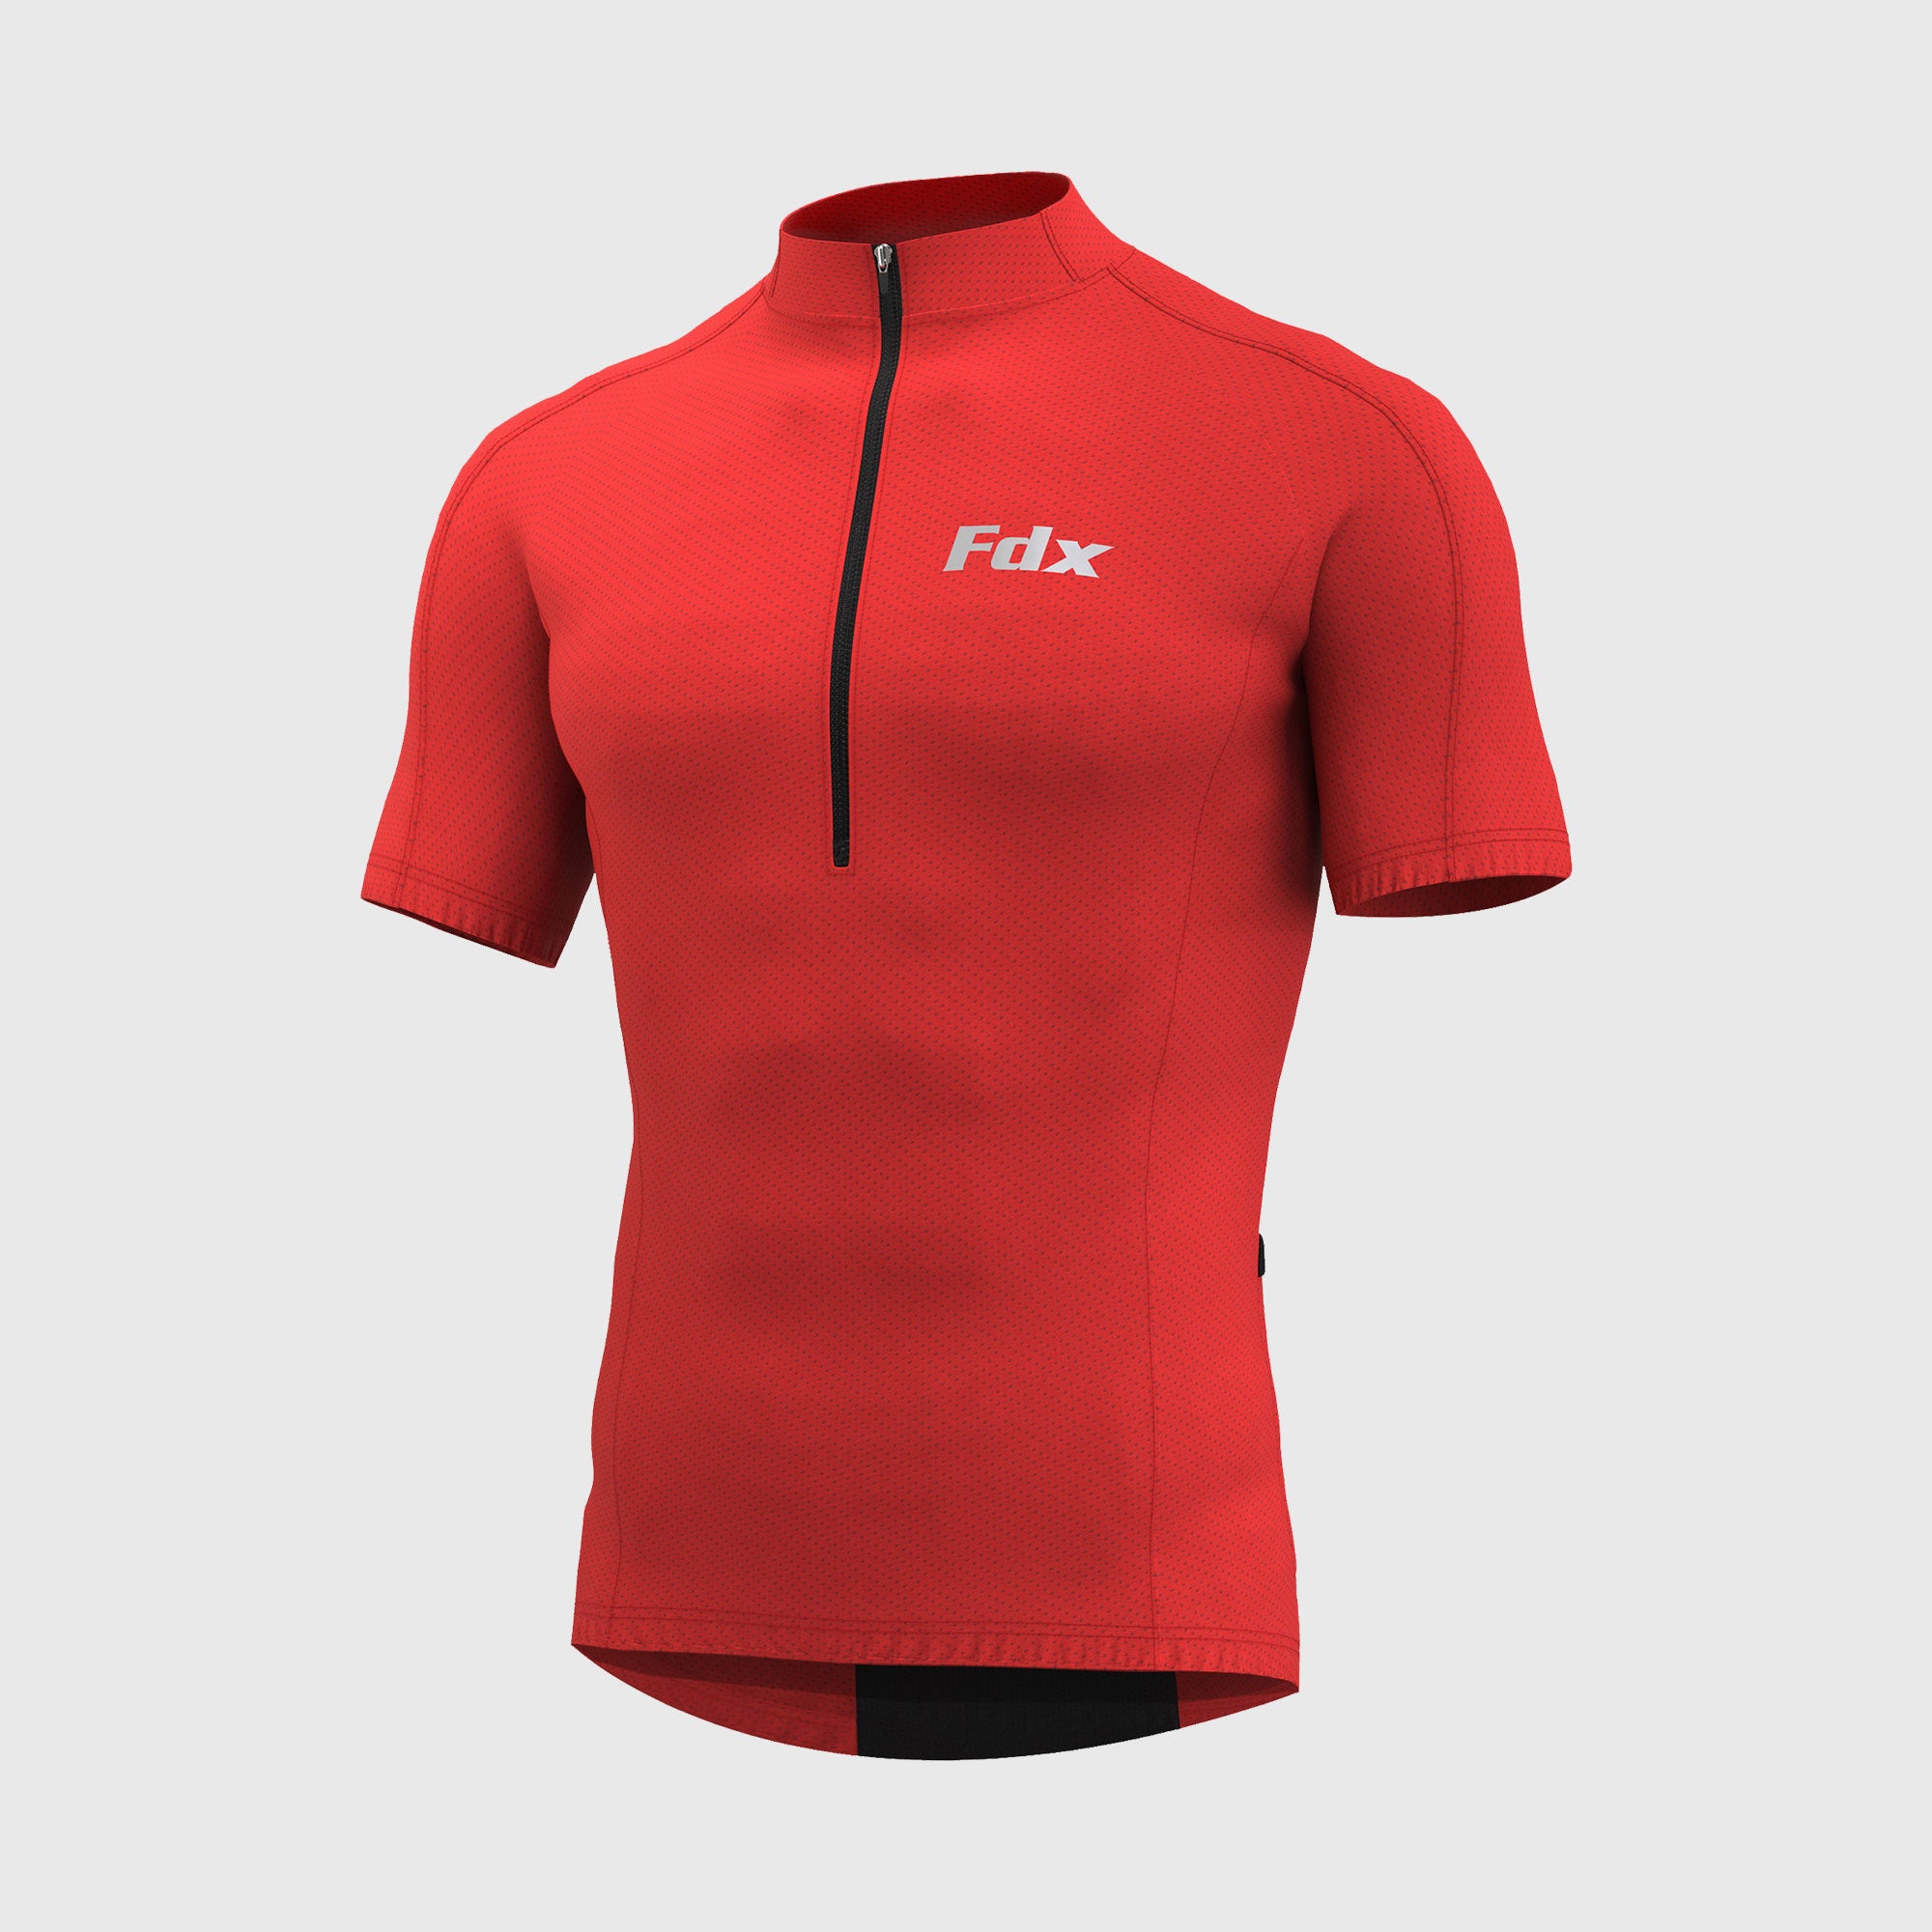 Fdx Mens Red Short Sleeve Cycling Jersey for Summer Best Road Bike Wear Top Light Weight, Full Zipper, Pockets & Hi-viz Reflectors - Pace